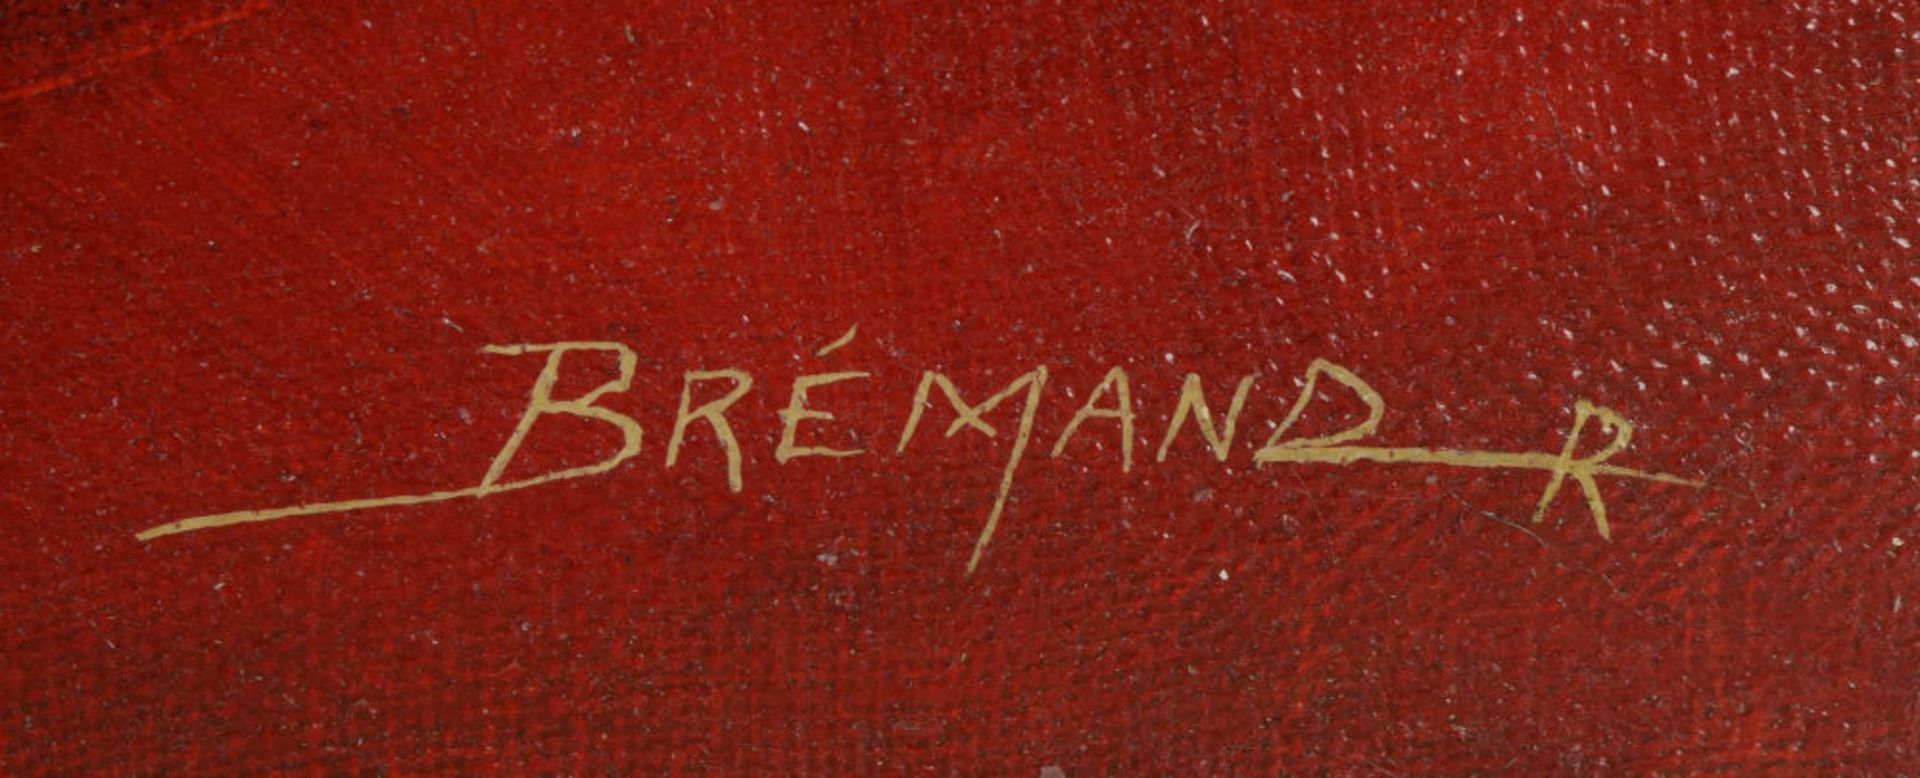 Brémand - Image 3 of 4